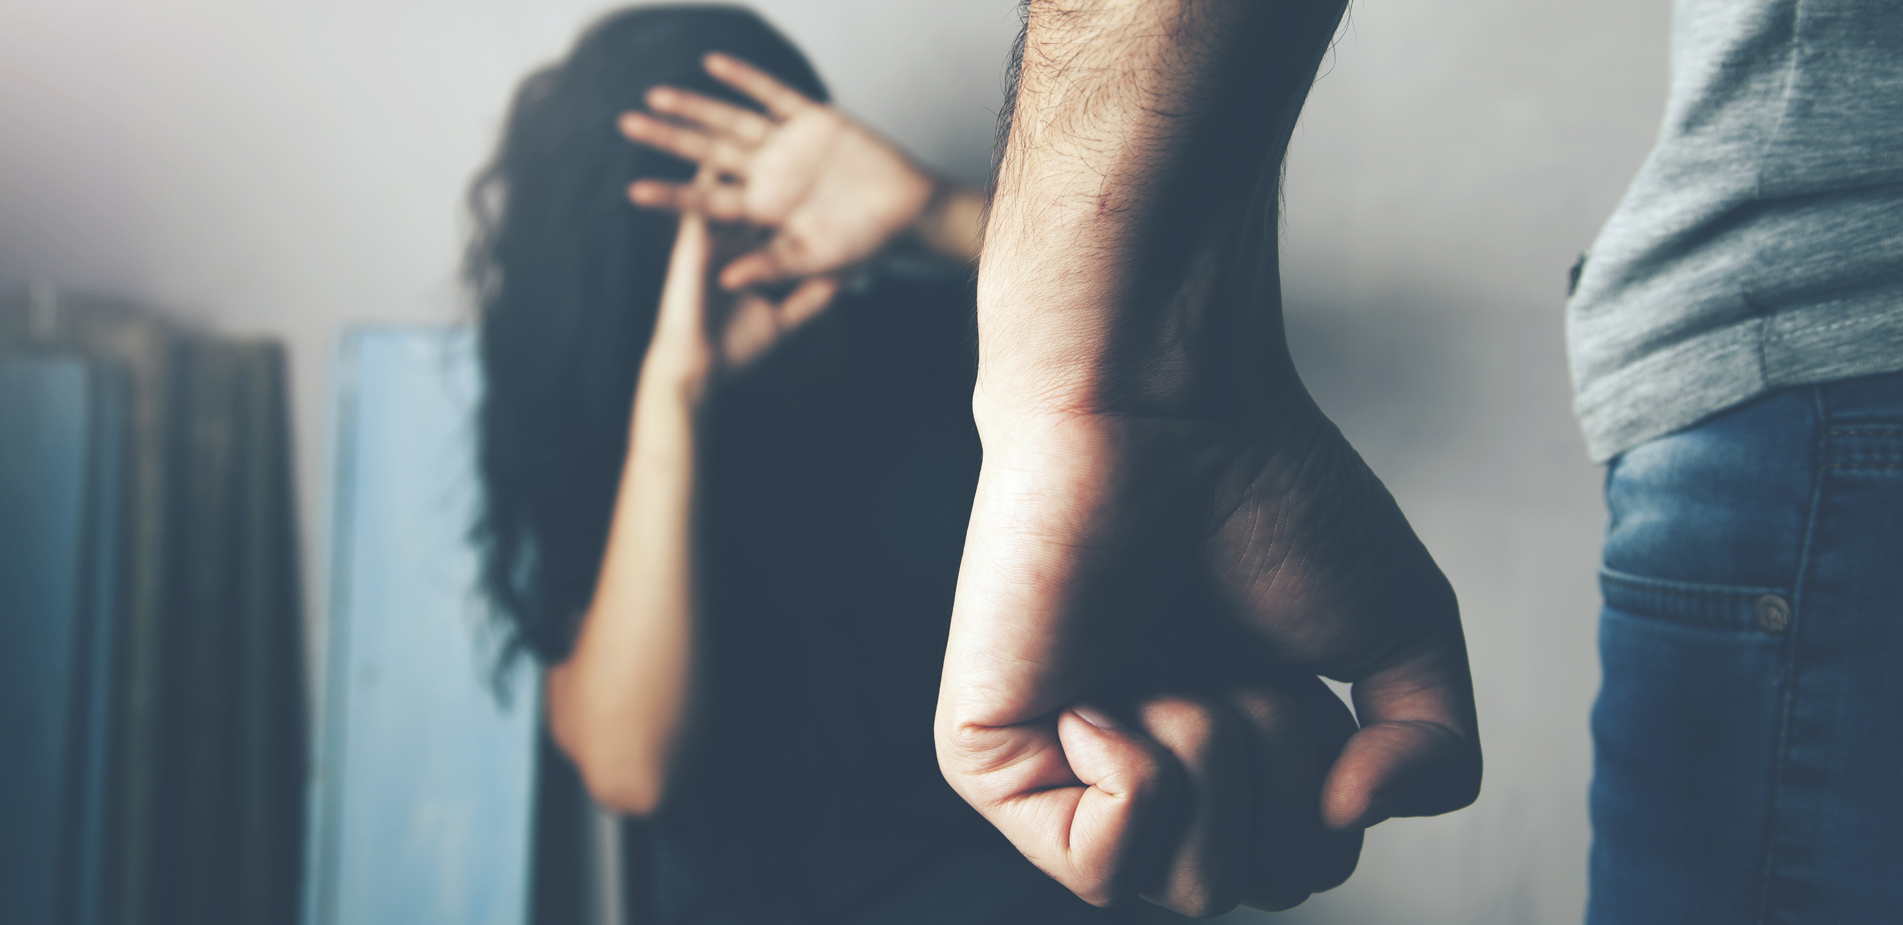 Πάτρα: Οργή για τον επαναλαμβανόμενο ξυλοδαρμό 38χρονης από τον σύντροφό της – «Σταμάτα θα με σκοτώσεις»